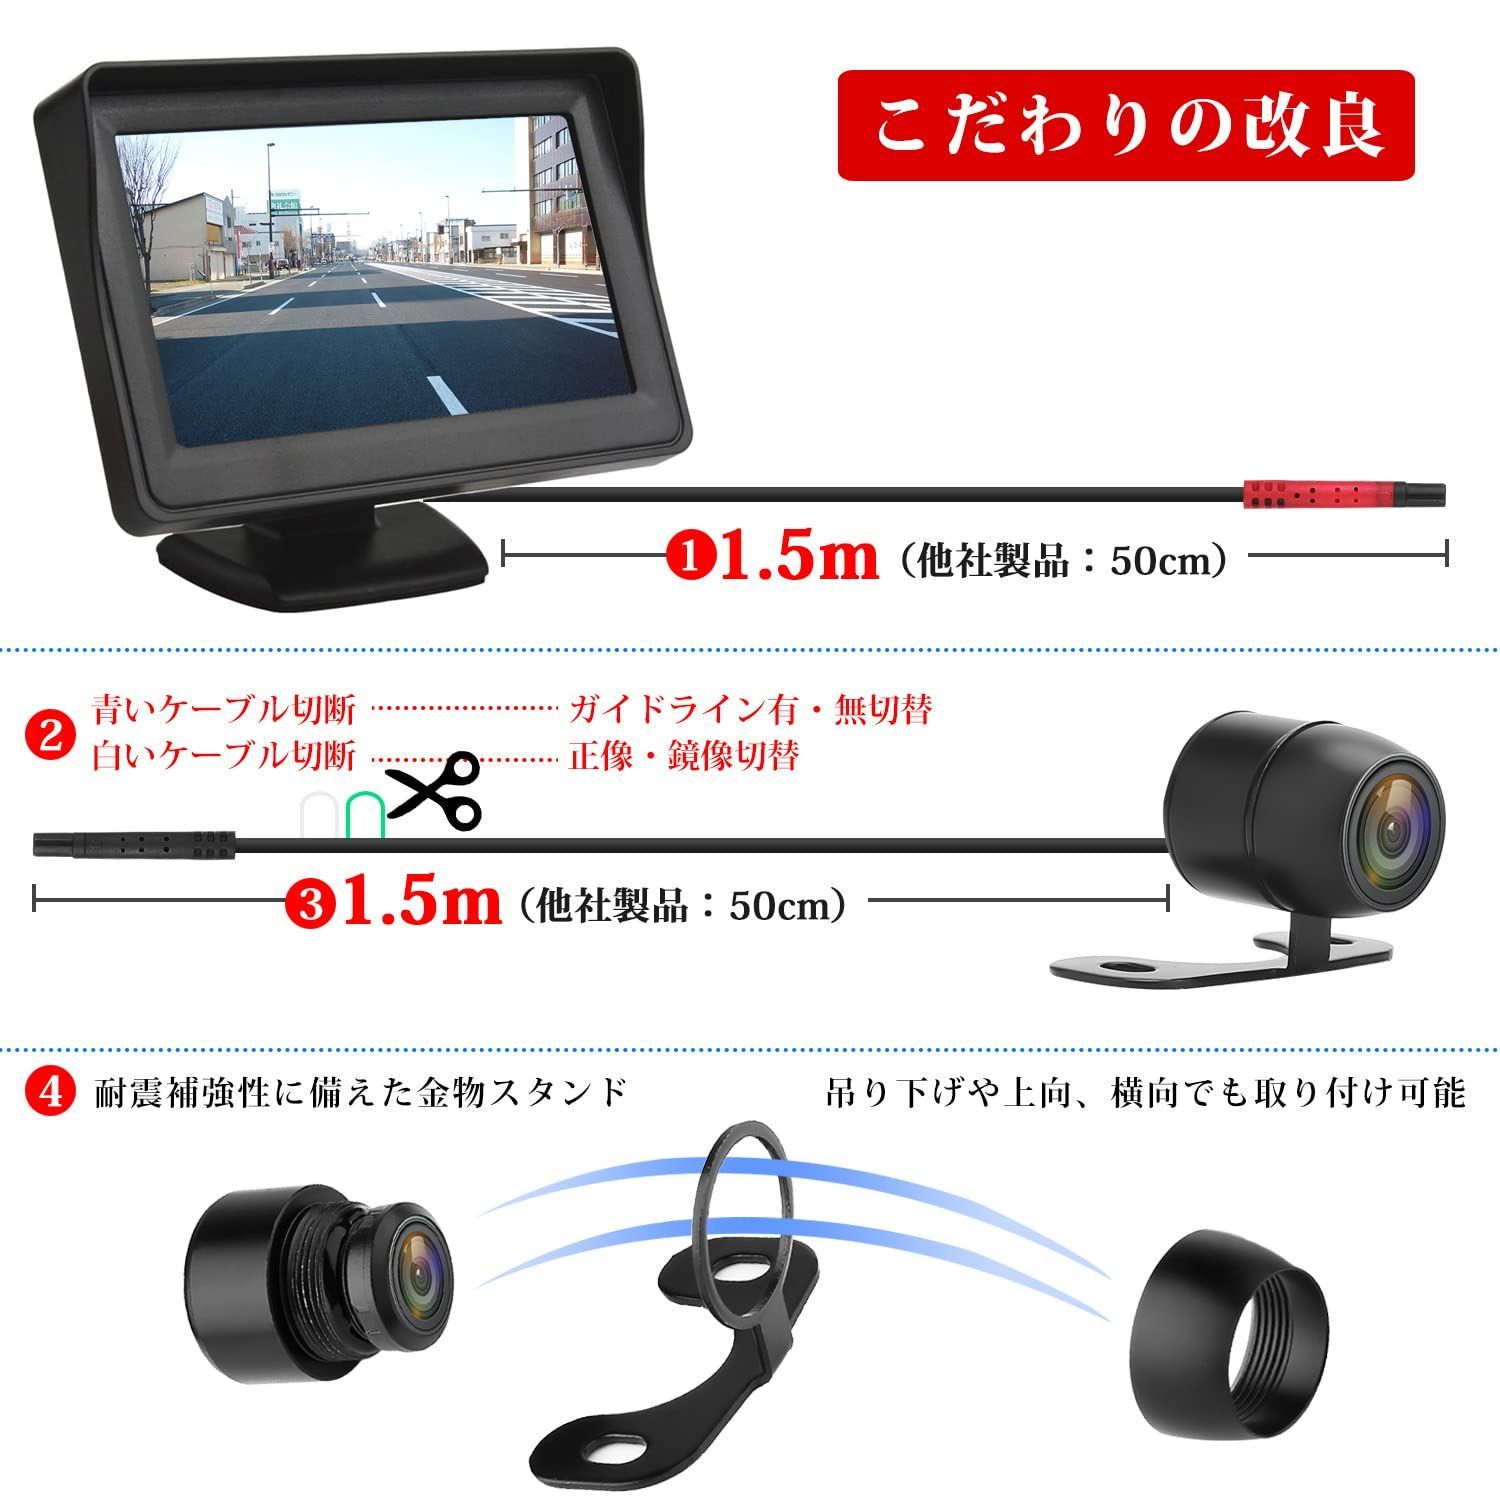 新品 フロントカメラ兼用 リアカメラ バックカメラセット ケーブル一本配線 シガーソケット給電 4.3インチLCDモニター 取り付け超簡単 12V  Antion 日本語説明書 - メルカリ